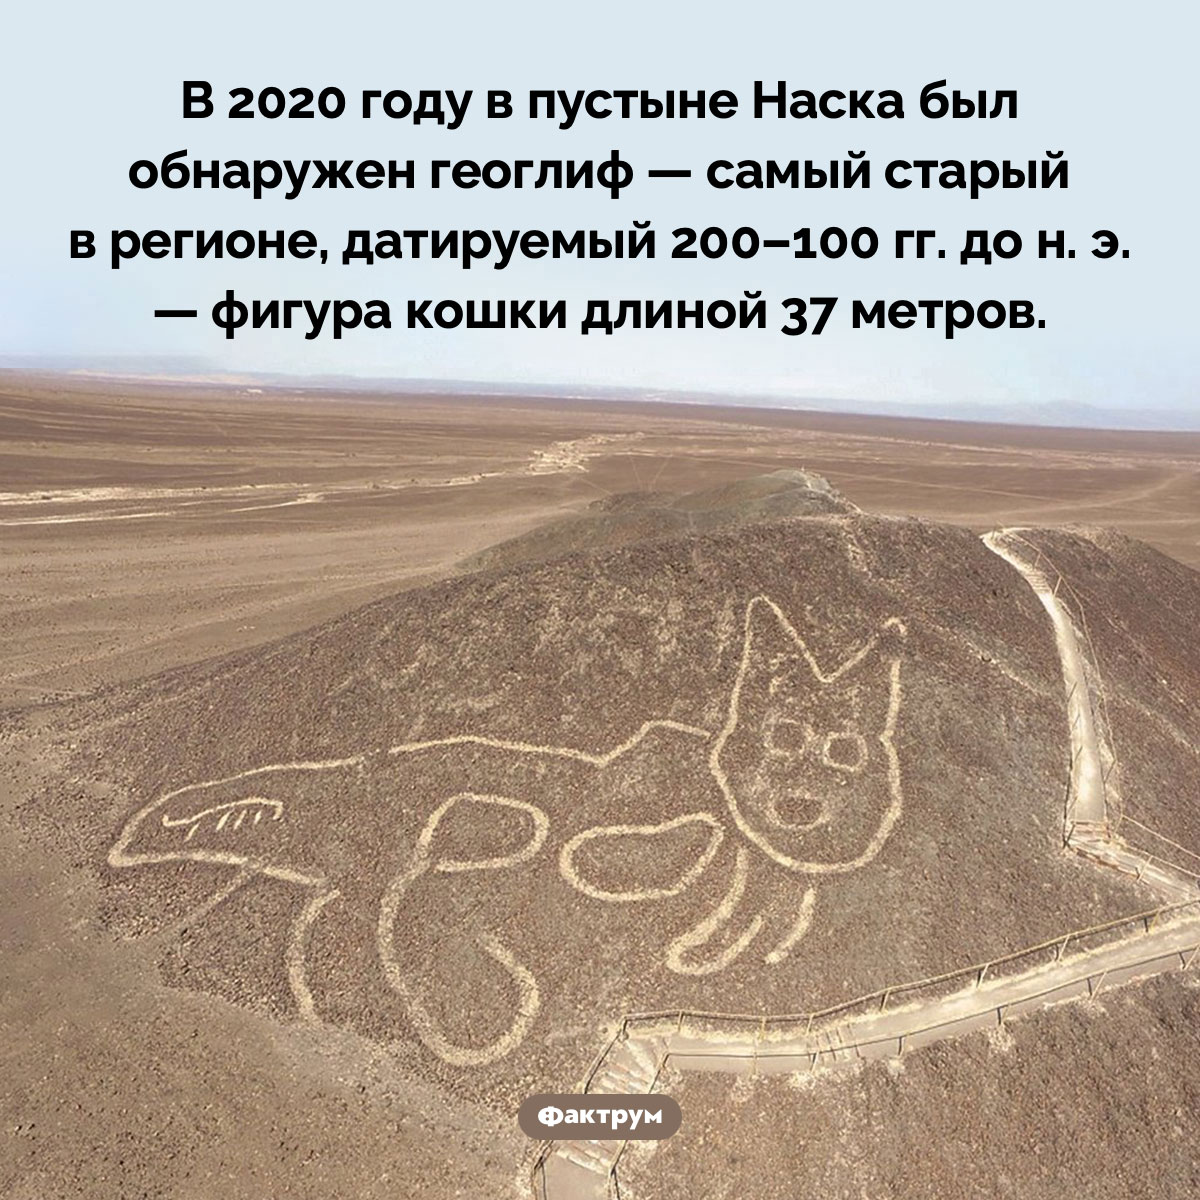 Доисторический геоглиф в виде кошки. В 2020 году в пустыне Наска был обнаружен геоглиф — самый старый в регионе, датируемый 200–100  гг. до н. э. — фигура кошки длиной 37 метров.